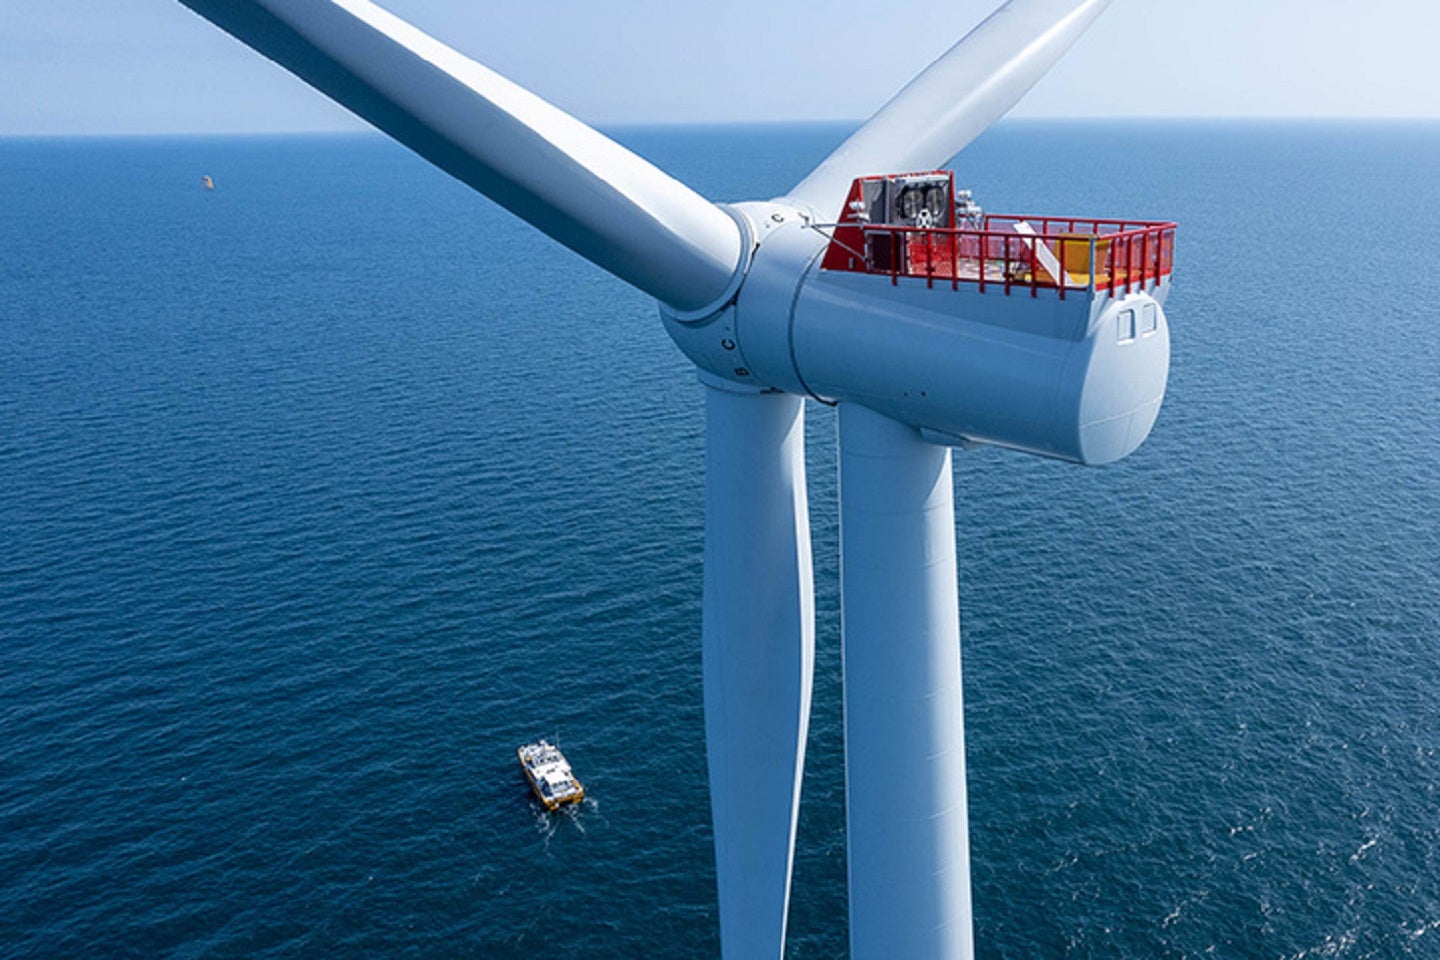 Le parc éolien de Saint-Brieuc Iberdrola au large de la France produit la première électricité